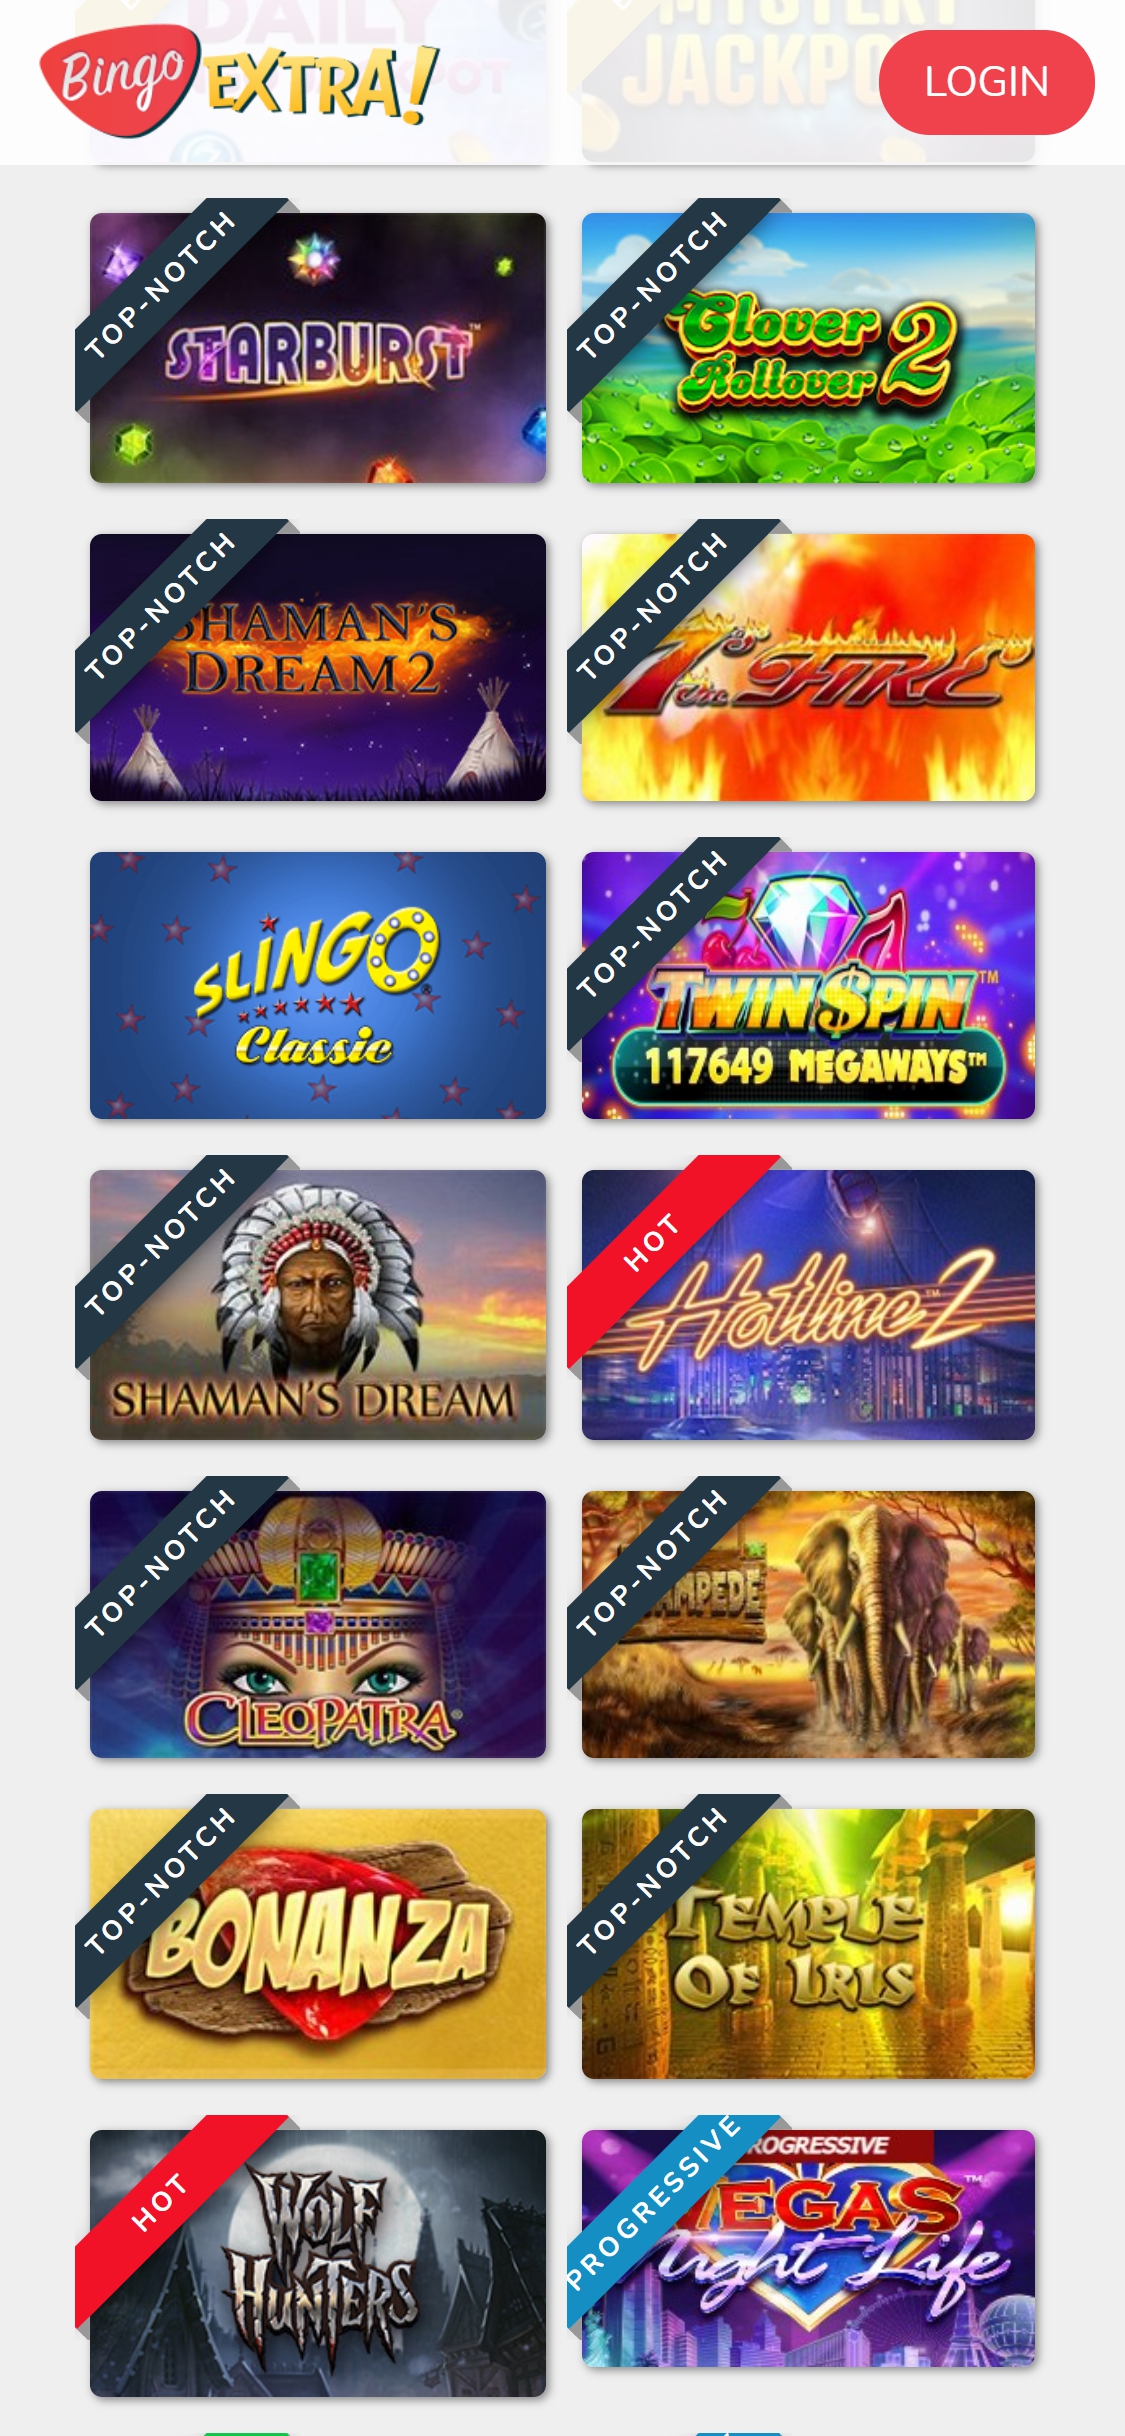 Bingo Extra Casino Mobile Games Review